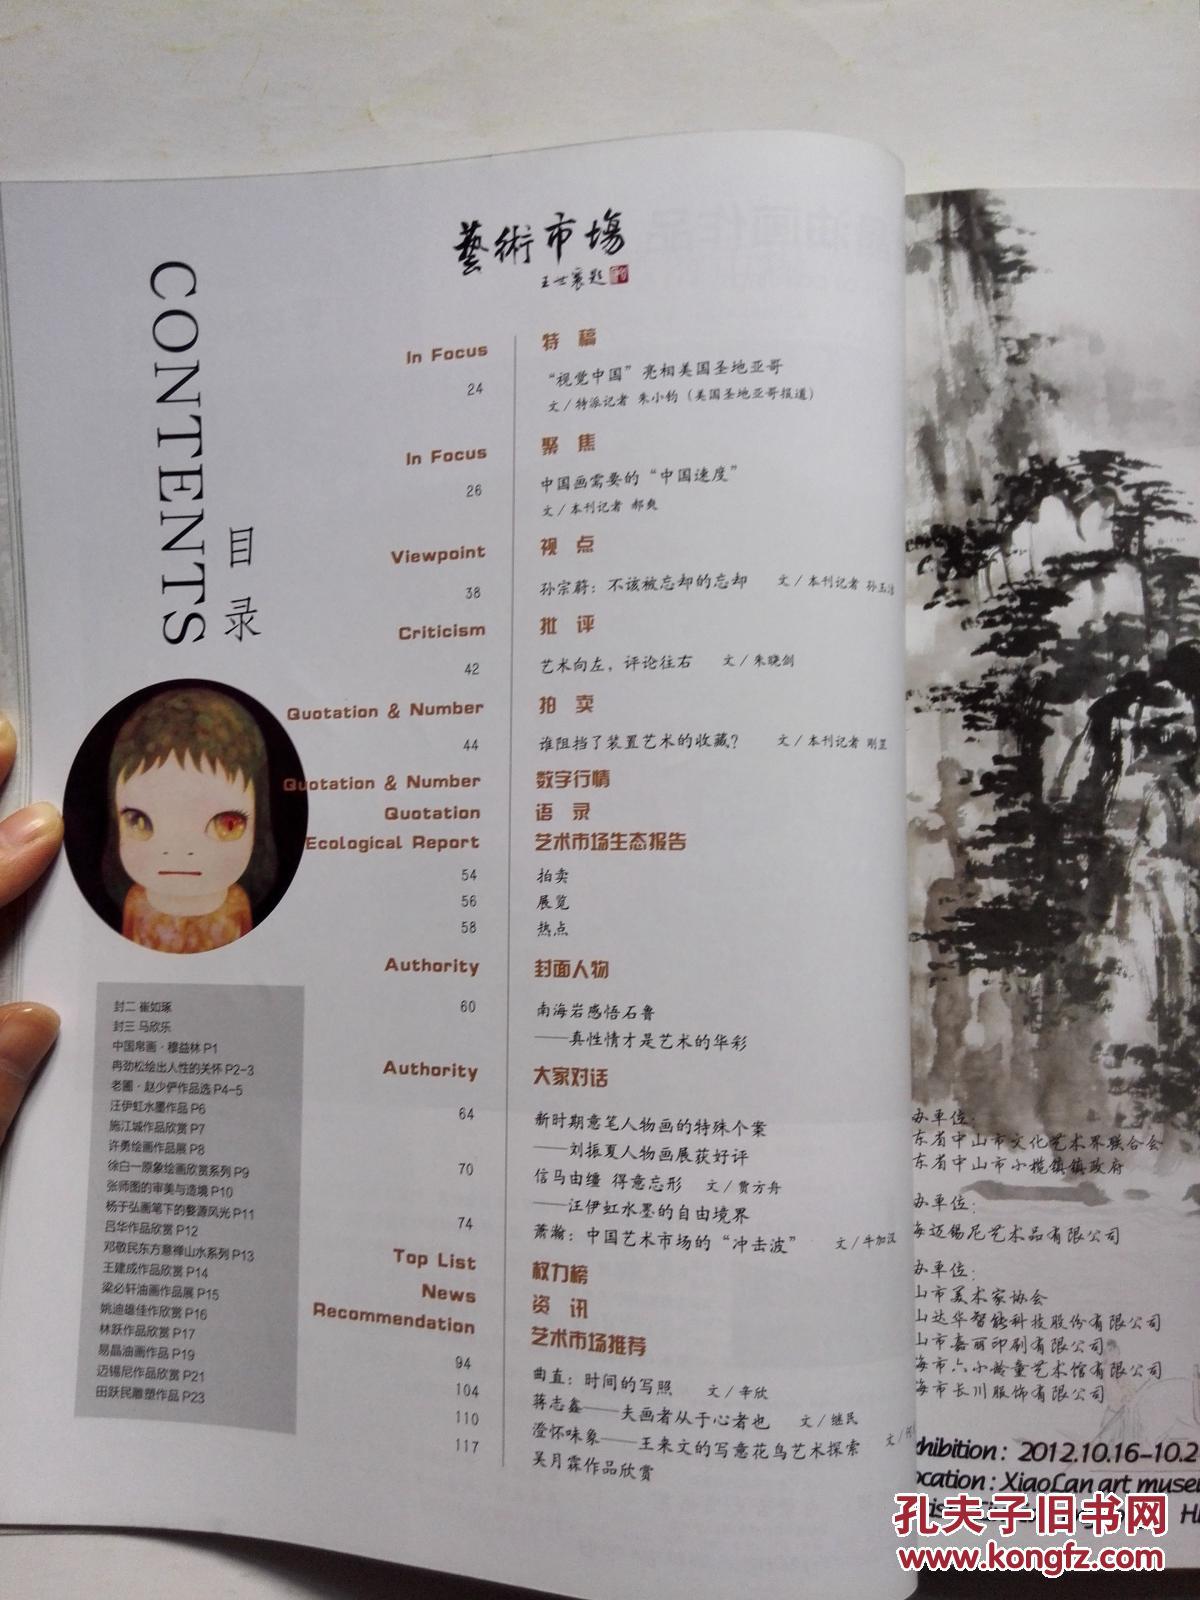 艺术市场  2012/10下半月刊  含2012艺术家权力榜  “中国画需要的“中国速度””、“南海岩感悟石鲁——真性情才是艺术的华彩”